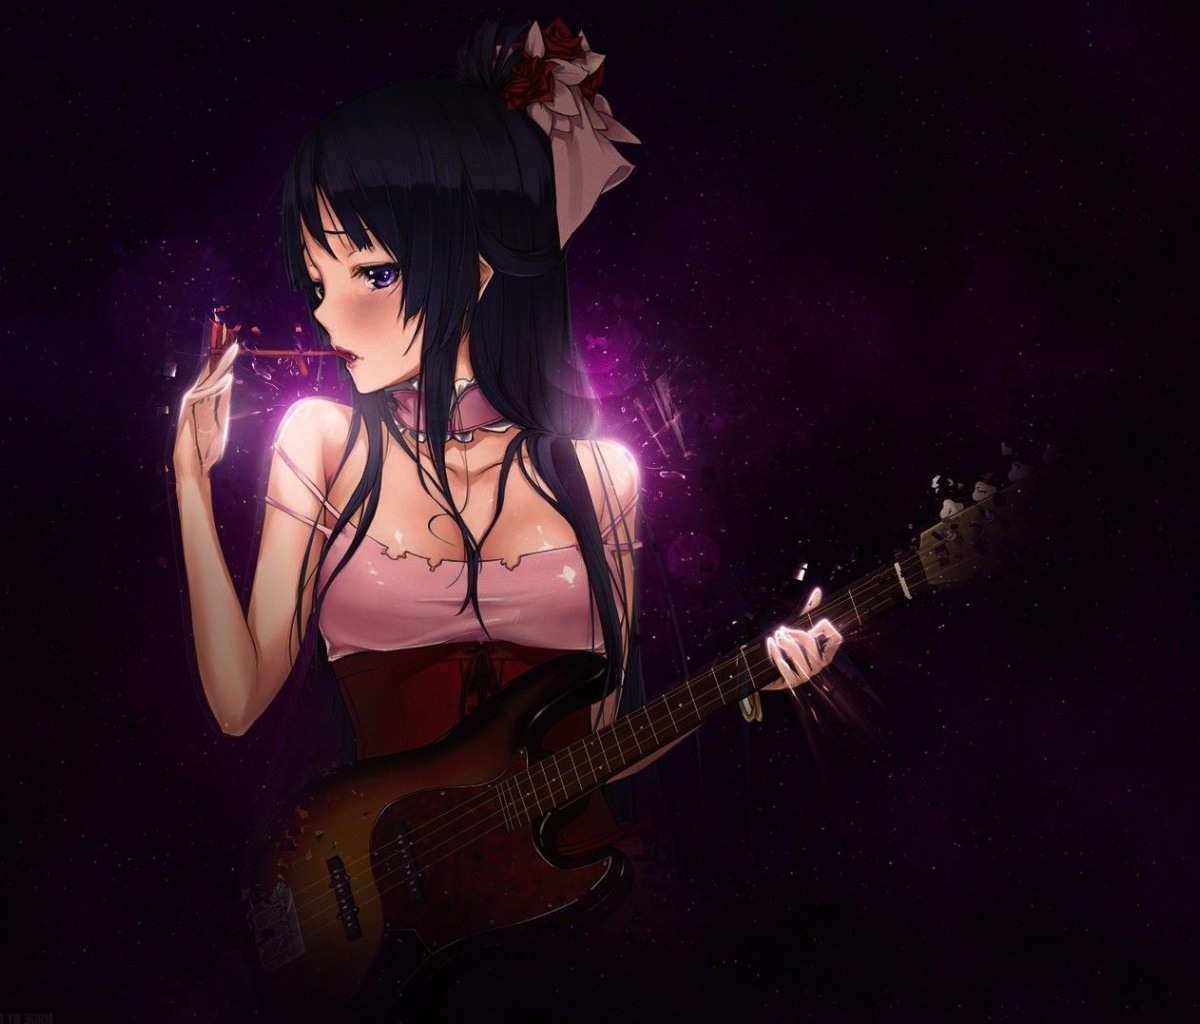 Обои Anime Girl with Guitar 1200x1024